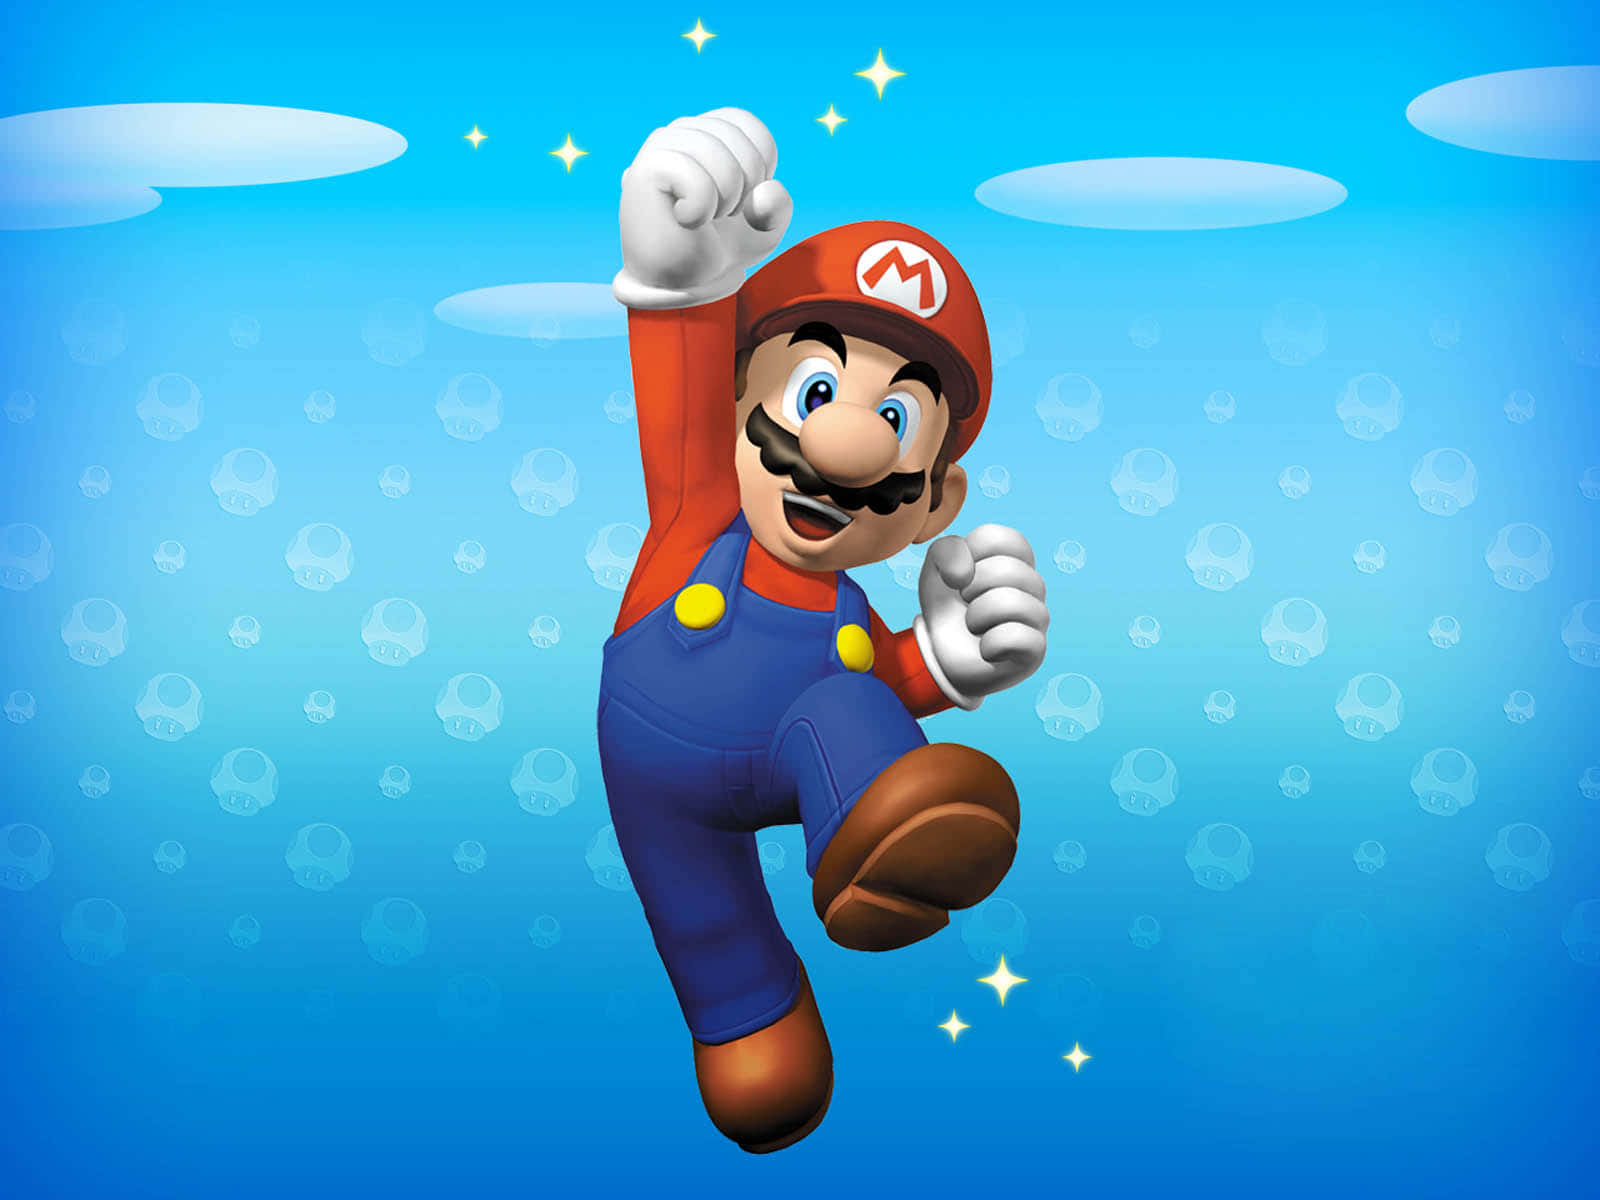 Mario leaps headlong into the adventure of a lifetime